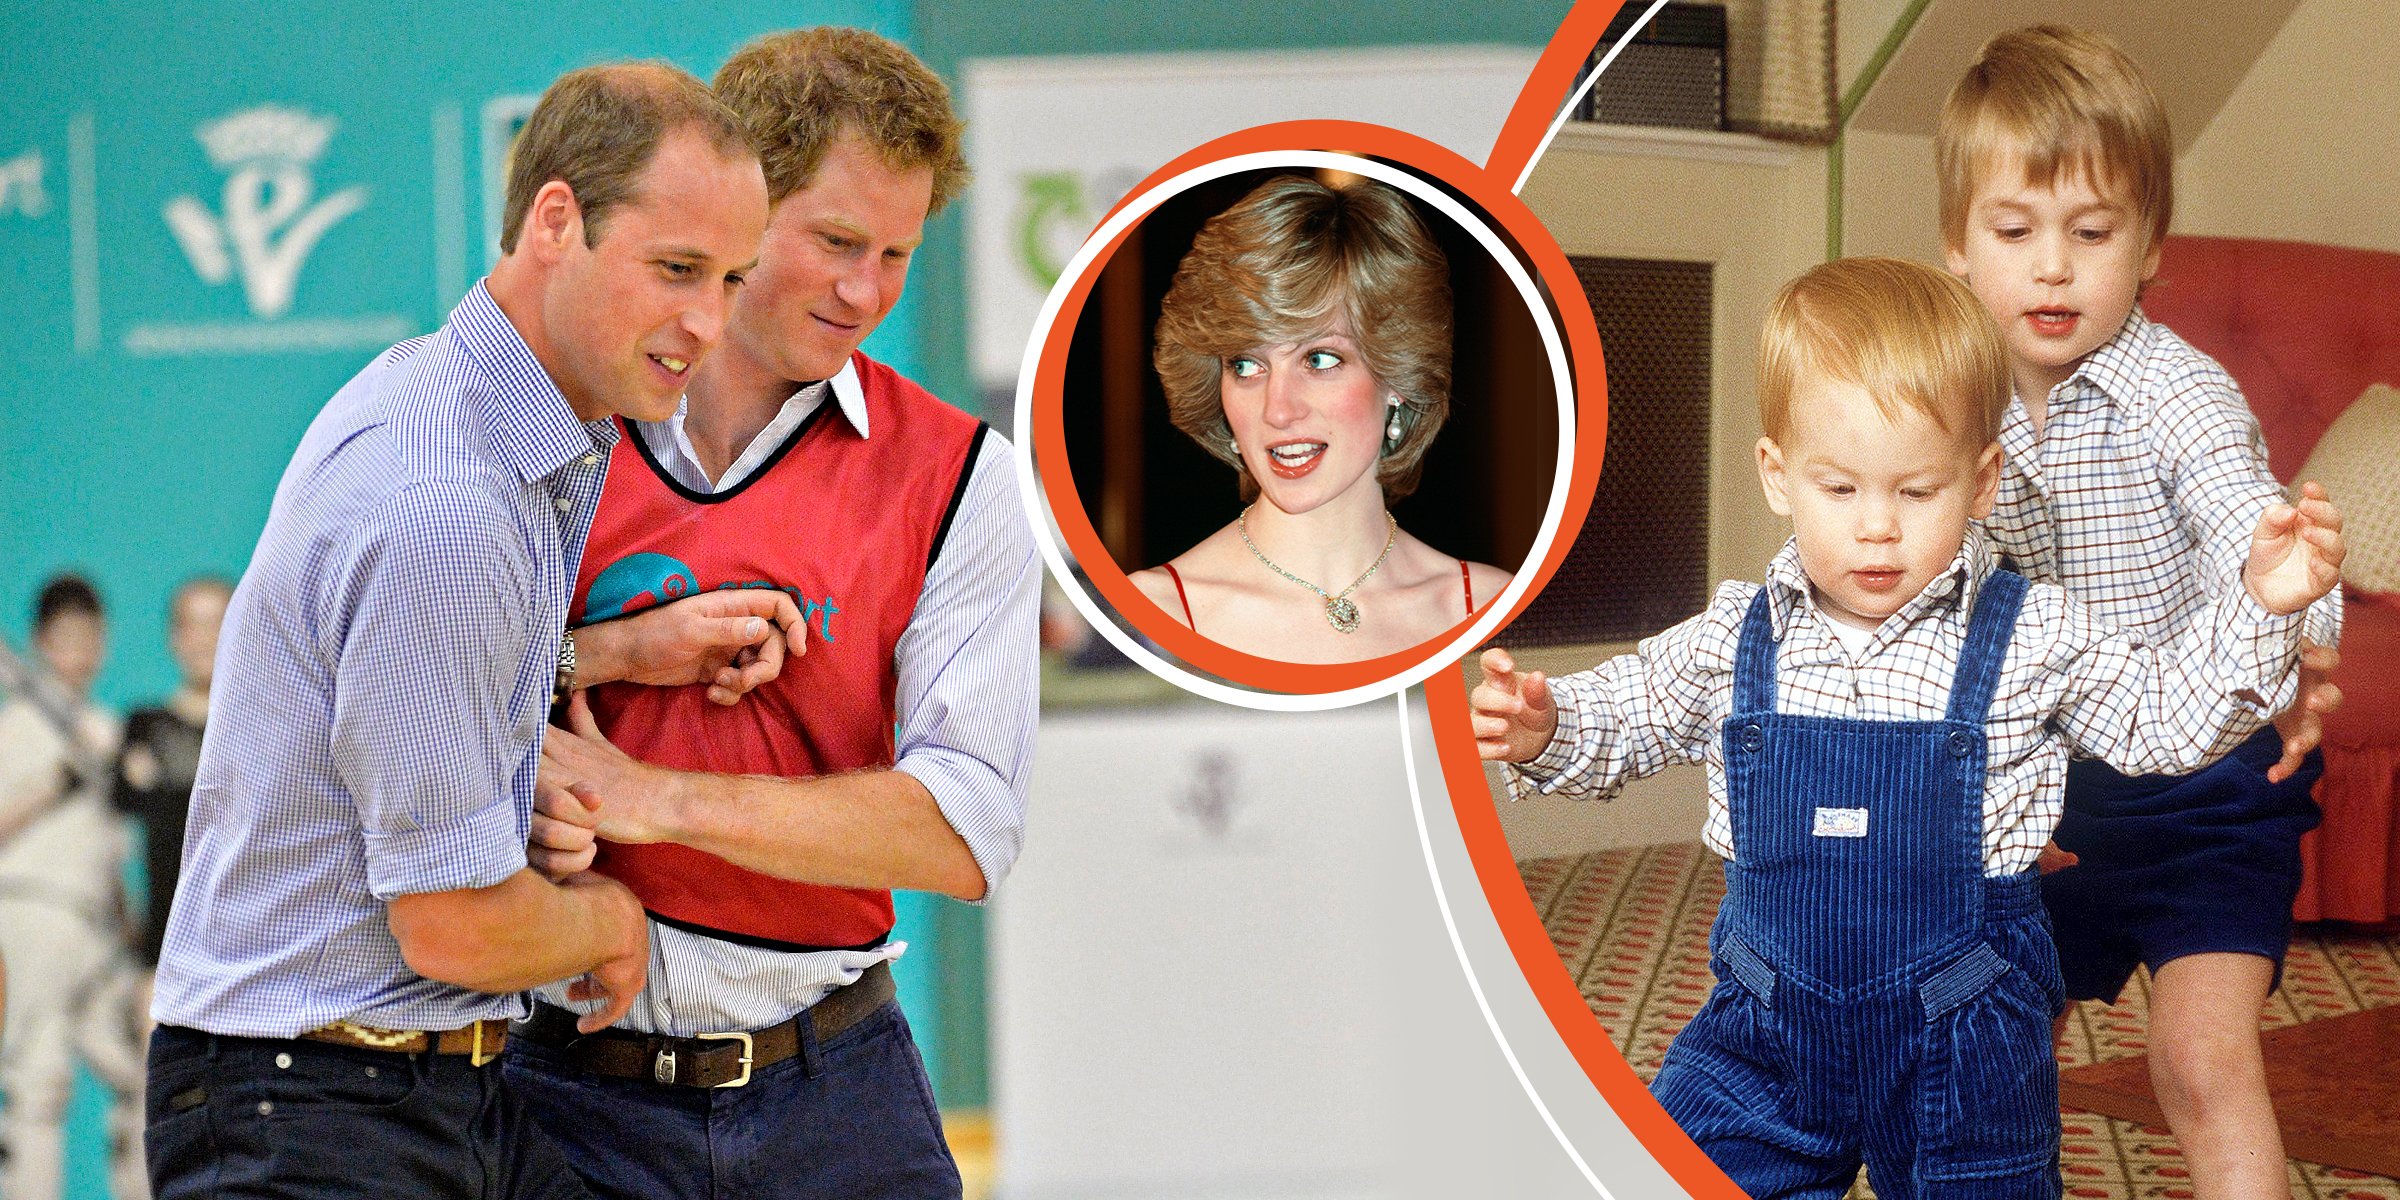 El príncipe William y el príncipe Harry | La princesa Diana | El príncipe William y el príncipe Harry | Foto: Getty Images